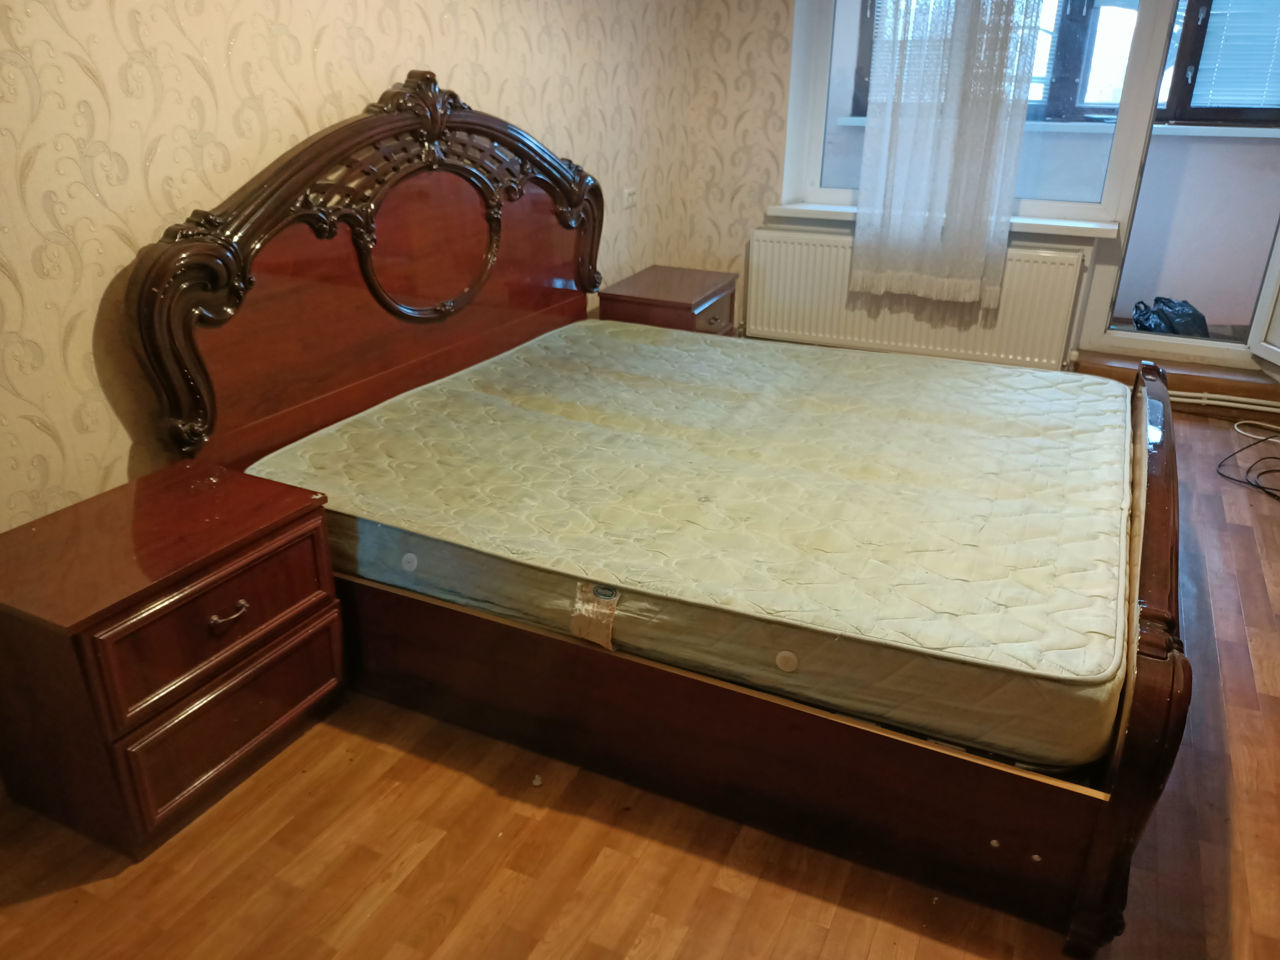 Кровать двуспальная с прикроватными тумбочками